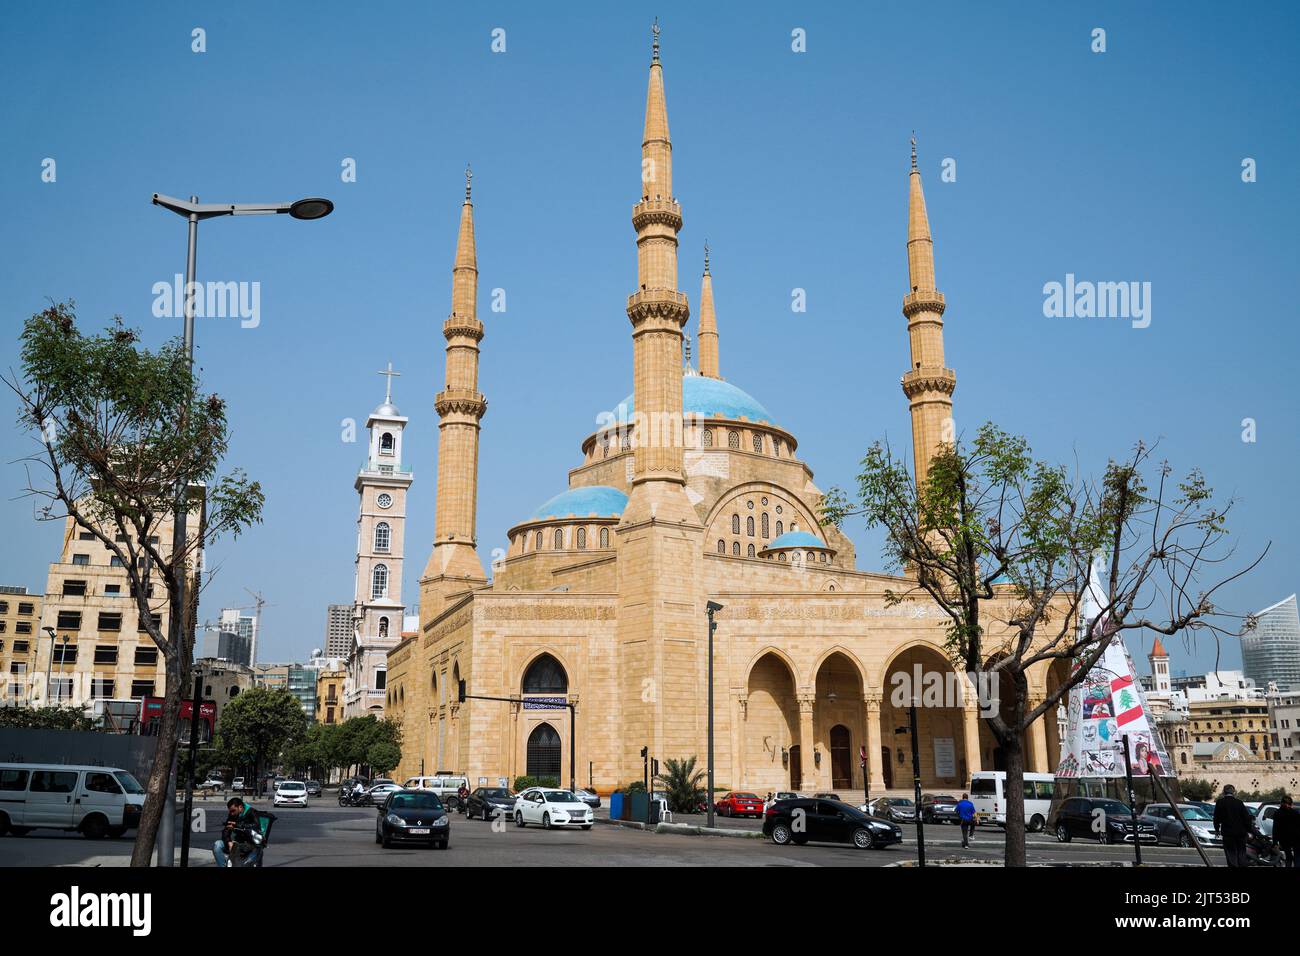 Beirut, Libano : Moschea musulmana di Mohammad al-Amin sunnita (conosciuta anche come Moschea Blu) e il campanile della Cattedrale di San Giorgio in Piazza dei Martiri, nel centro di Beirut, Libano Foto Stock